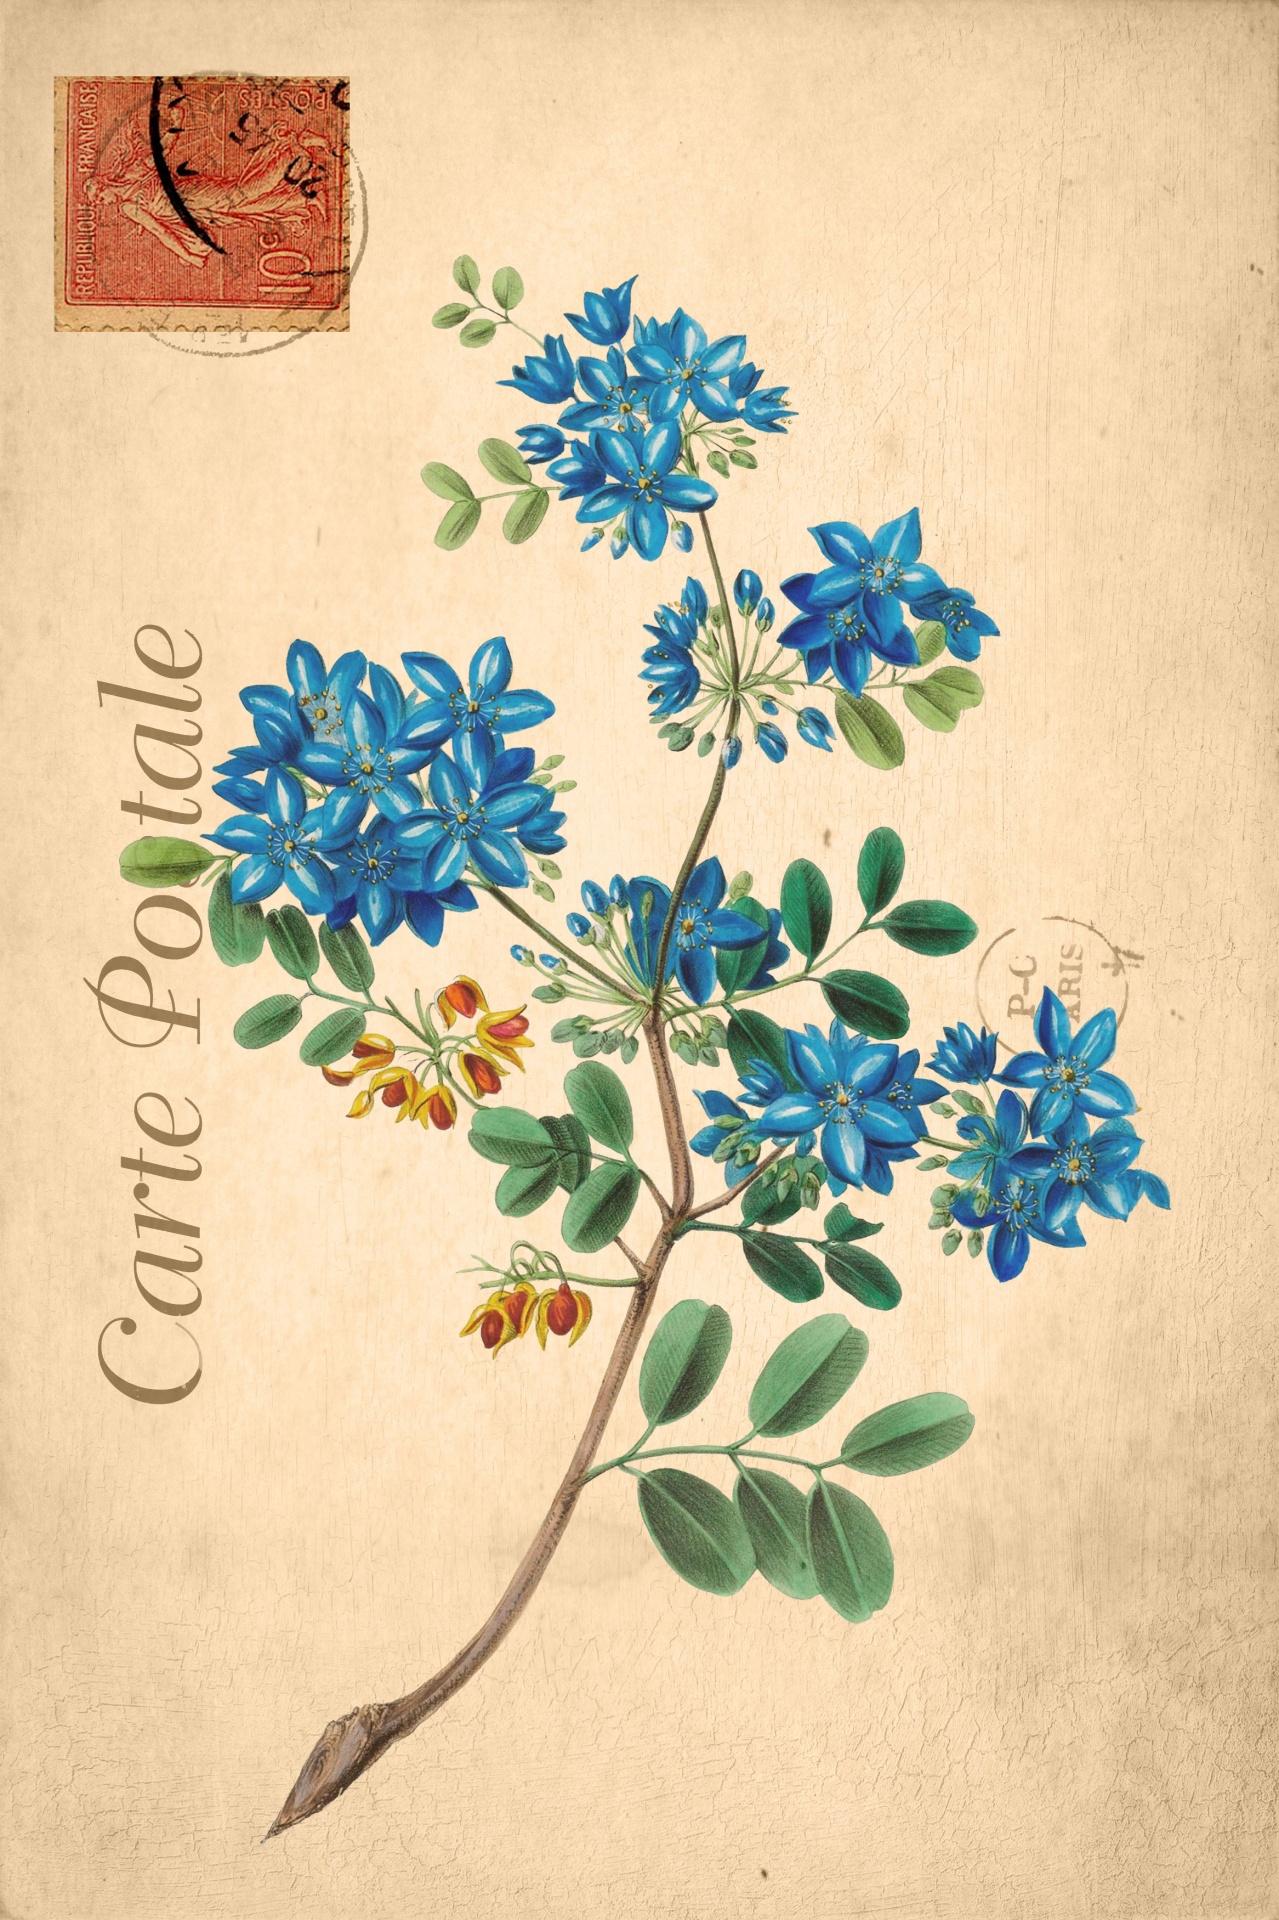 Vintage, blue floral flowers art illustration on old french postcard